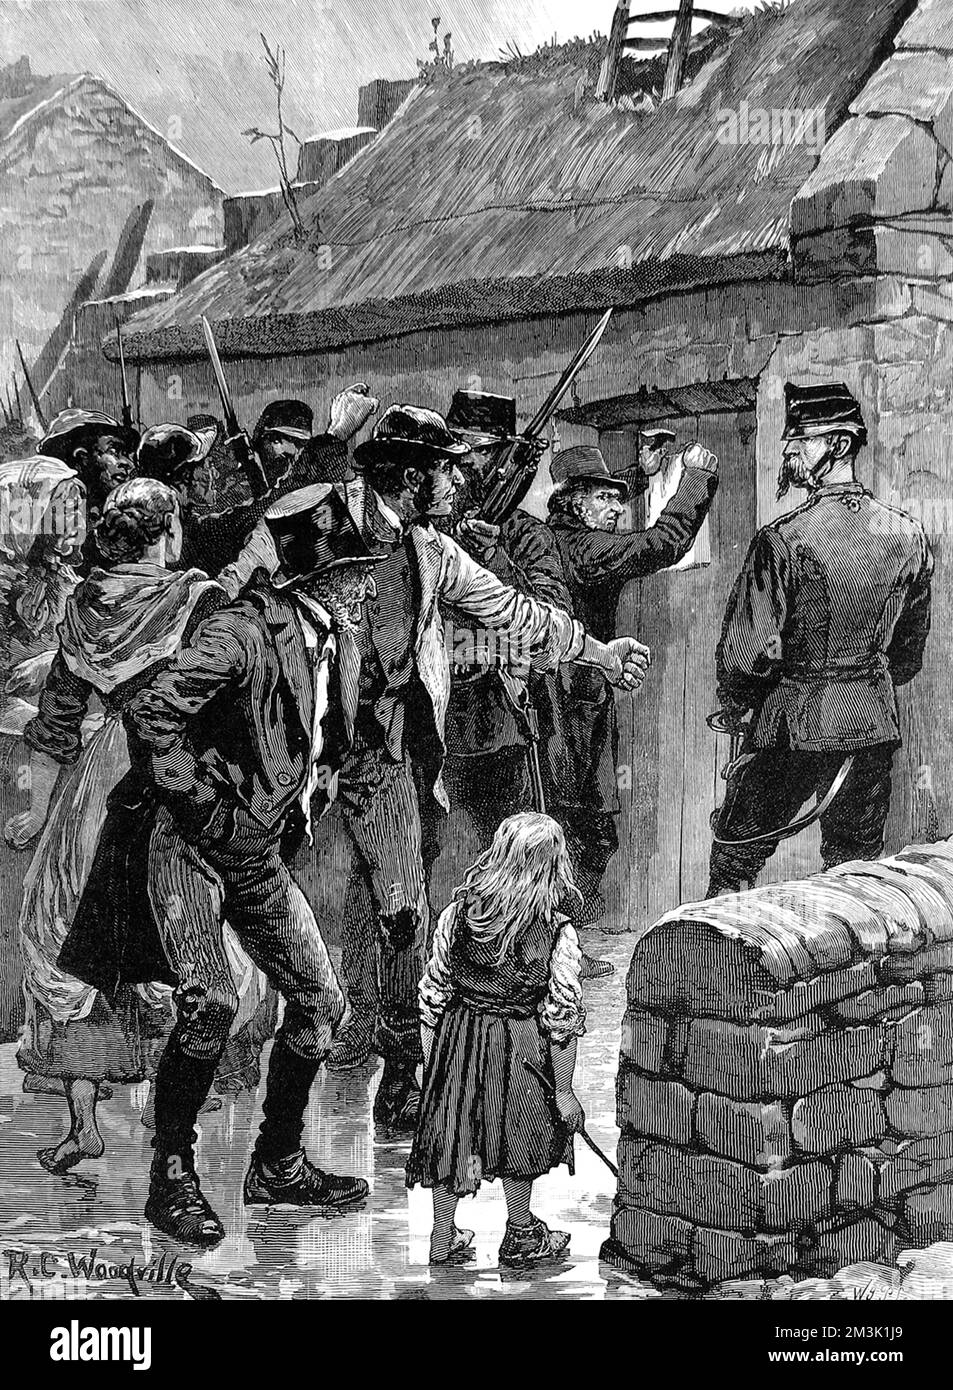 Gravur, die die Zustellung eines Räumungsbescheids in einem kleinen Landhaus in der Nähe von Headford in Galway, Irland, im Jahr 1880 zeigt. Während der Depression in der Landwirtschaft im 19.. Jahrhundert in Irland wurden viele Pächter aus dem Verkehr gezogen, weil sie ihre Mieten nicht bezahlen konnten. Die Vermieter waren überwiegend abwesende englische Aristokraten. Die Bauern sahen sich dem totalen Ruin und dem Hunger ausgesetzt, diejenigen, die es sich leisten konnten auszuwandern, während andere der Liga des Landes beitraten, die immer gewalttätigere Methoden einsetzte, um sich den Vermietern zu widersetzen. Datum: 1880 Stockfoto